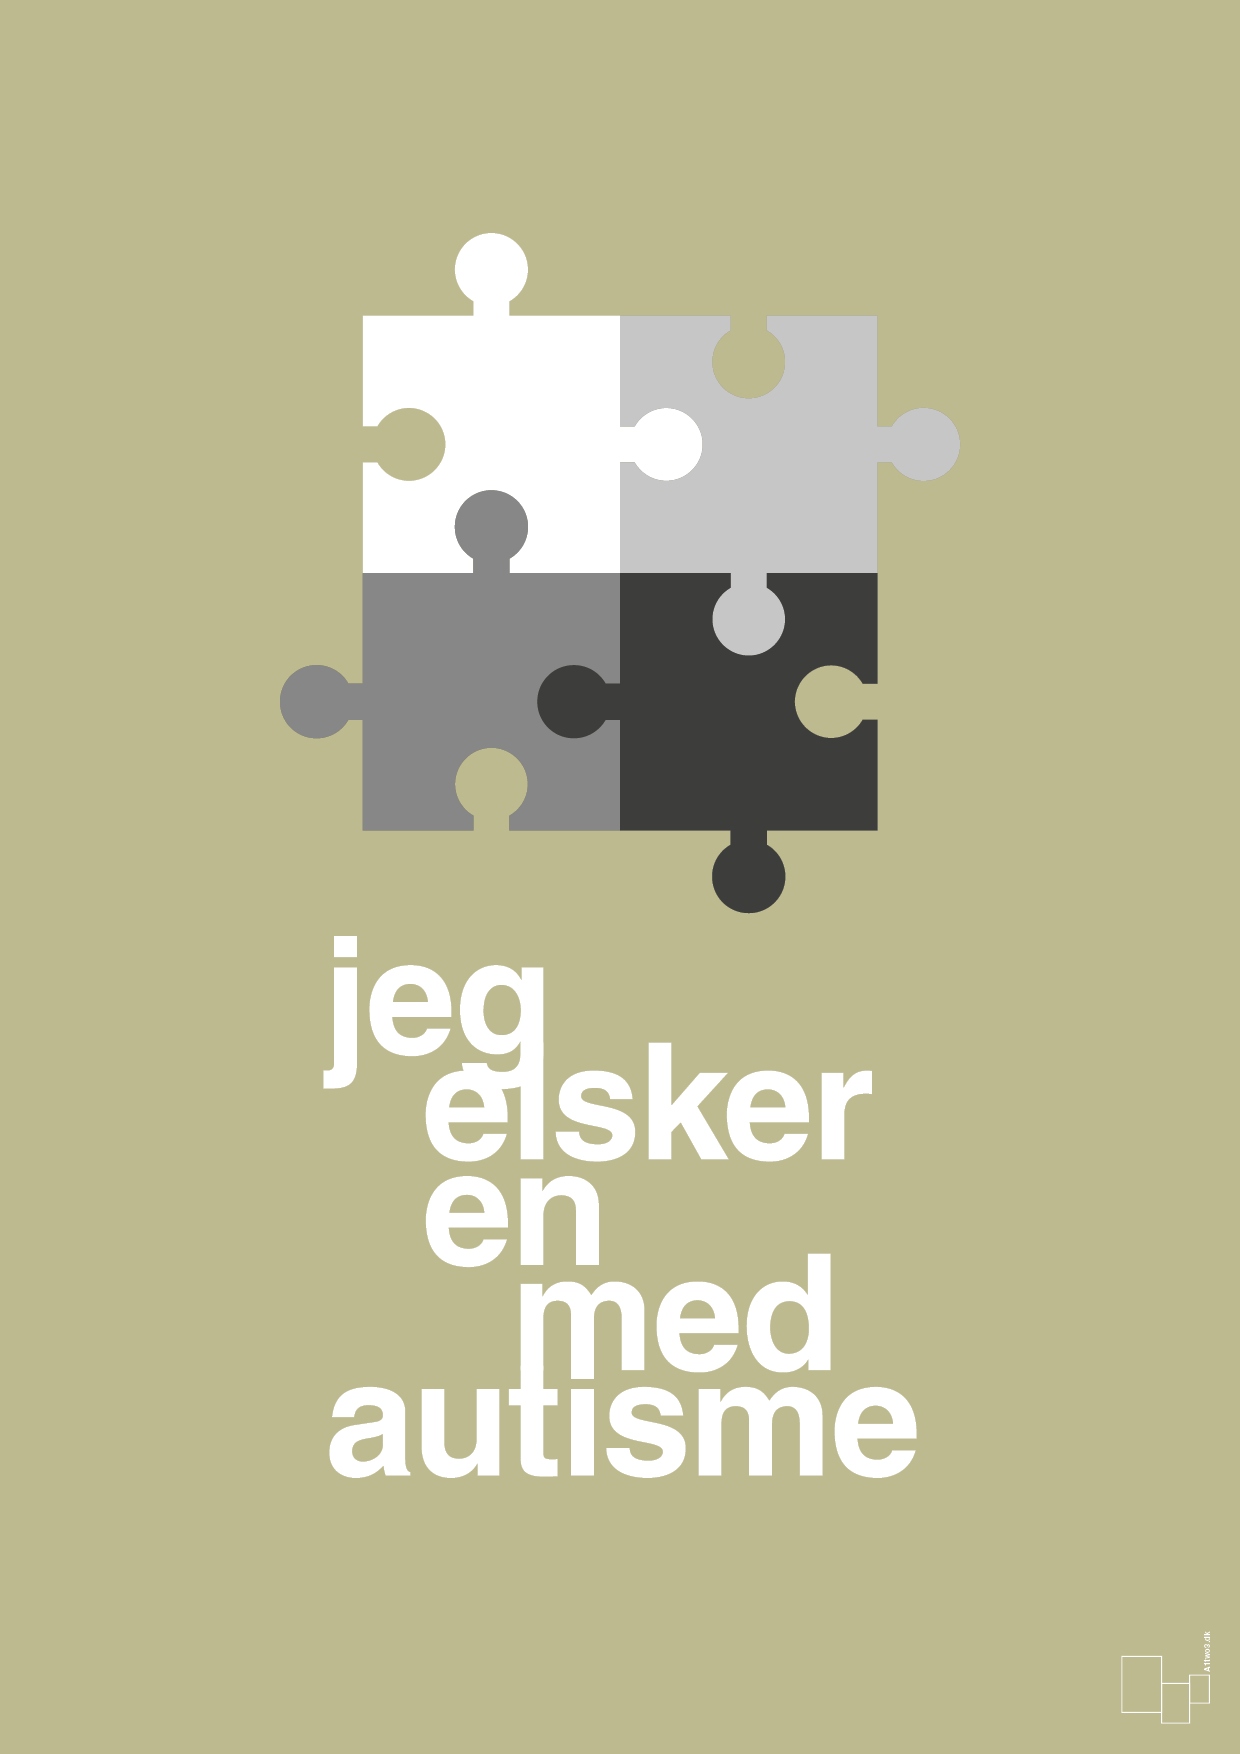 jeg elsker en med autisme - Plakat med Samfund i Back to Nature